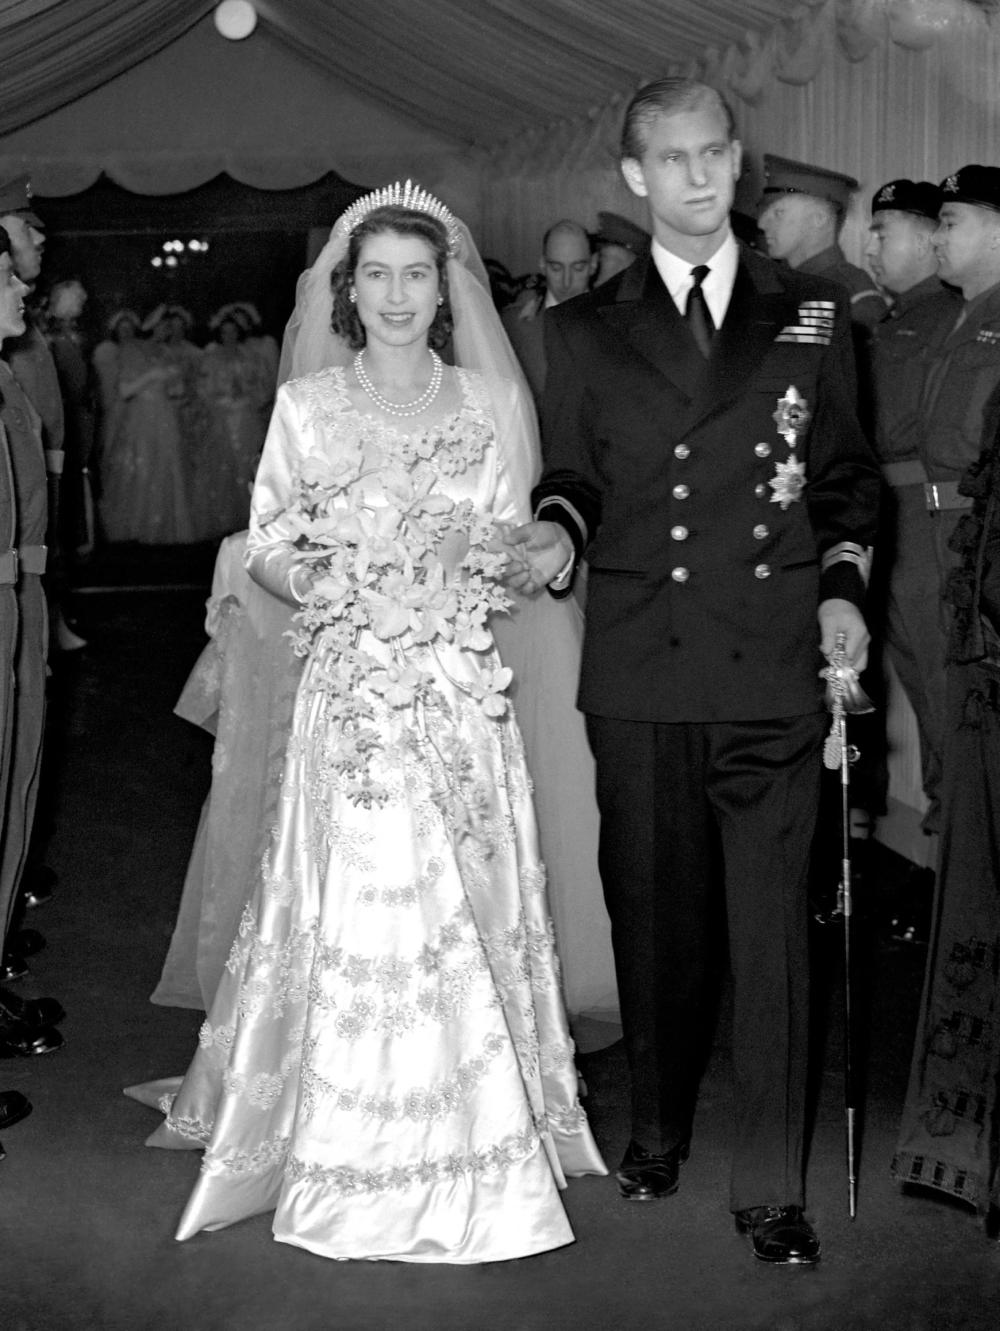 Váy cưới tay dài lộng lẫy của nữ hoàng Elizabeth II